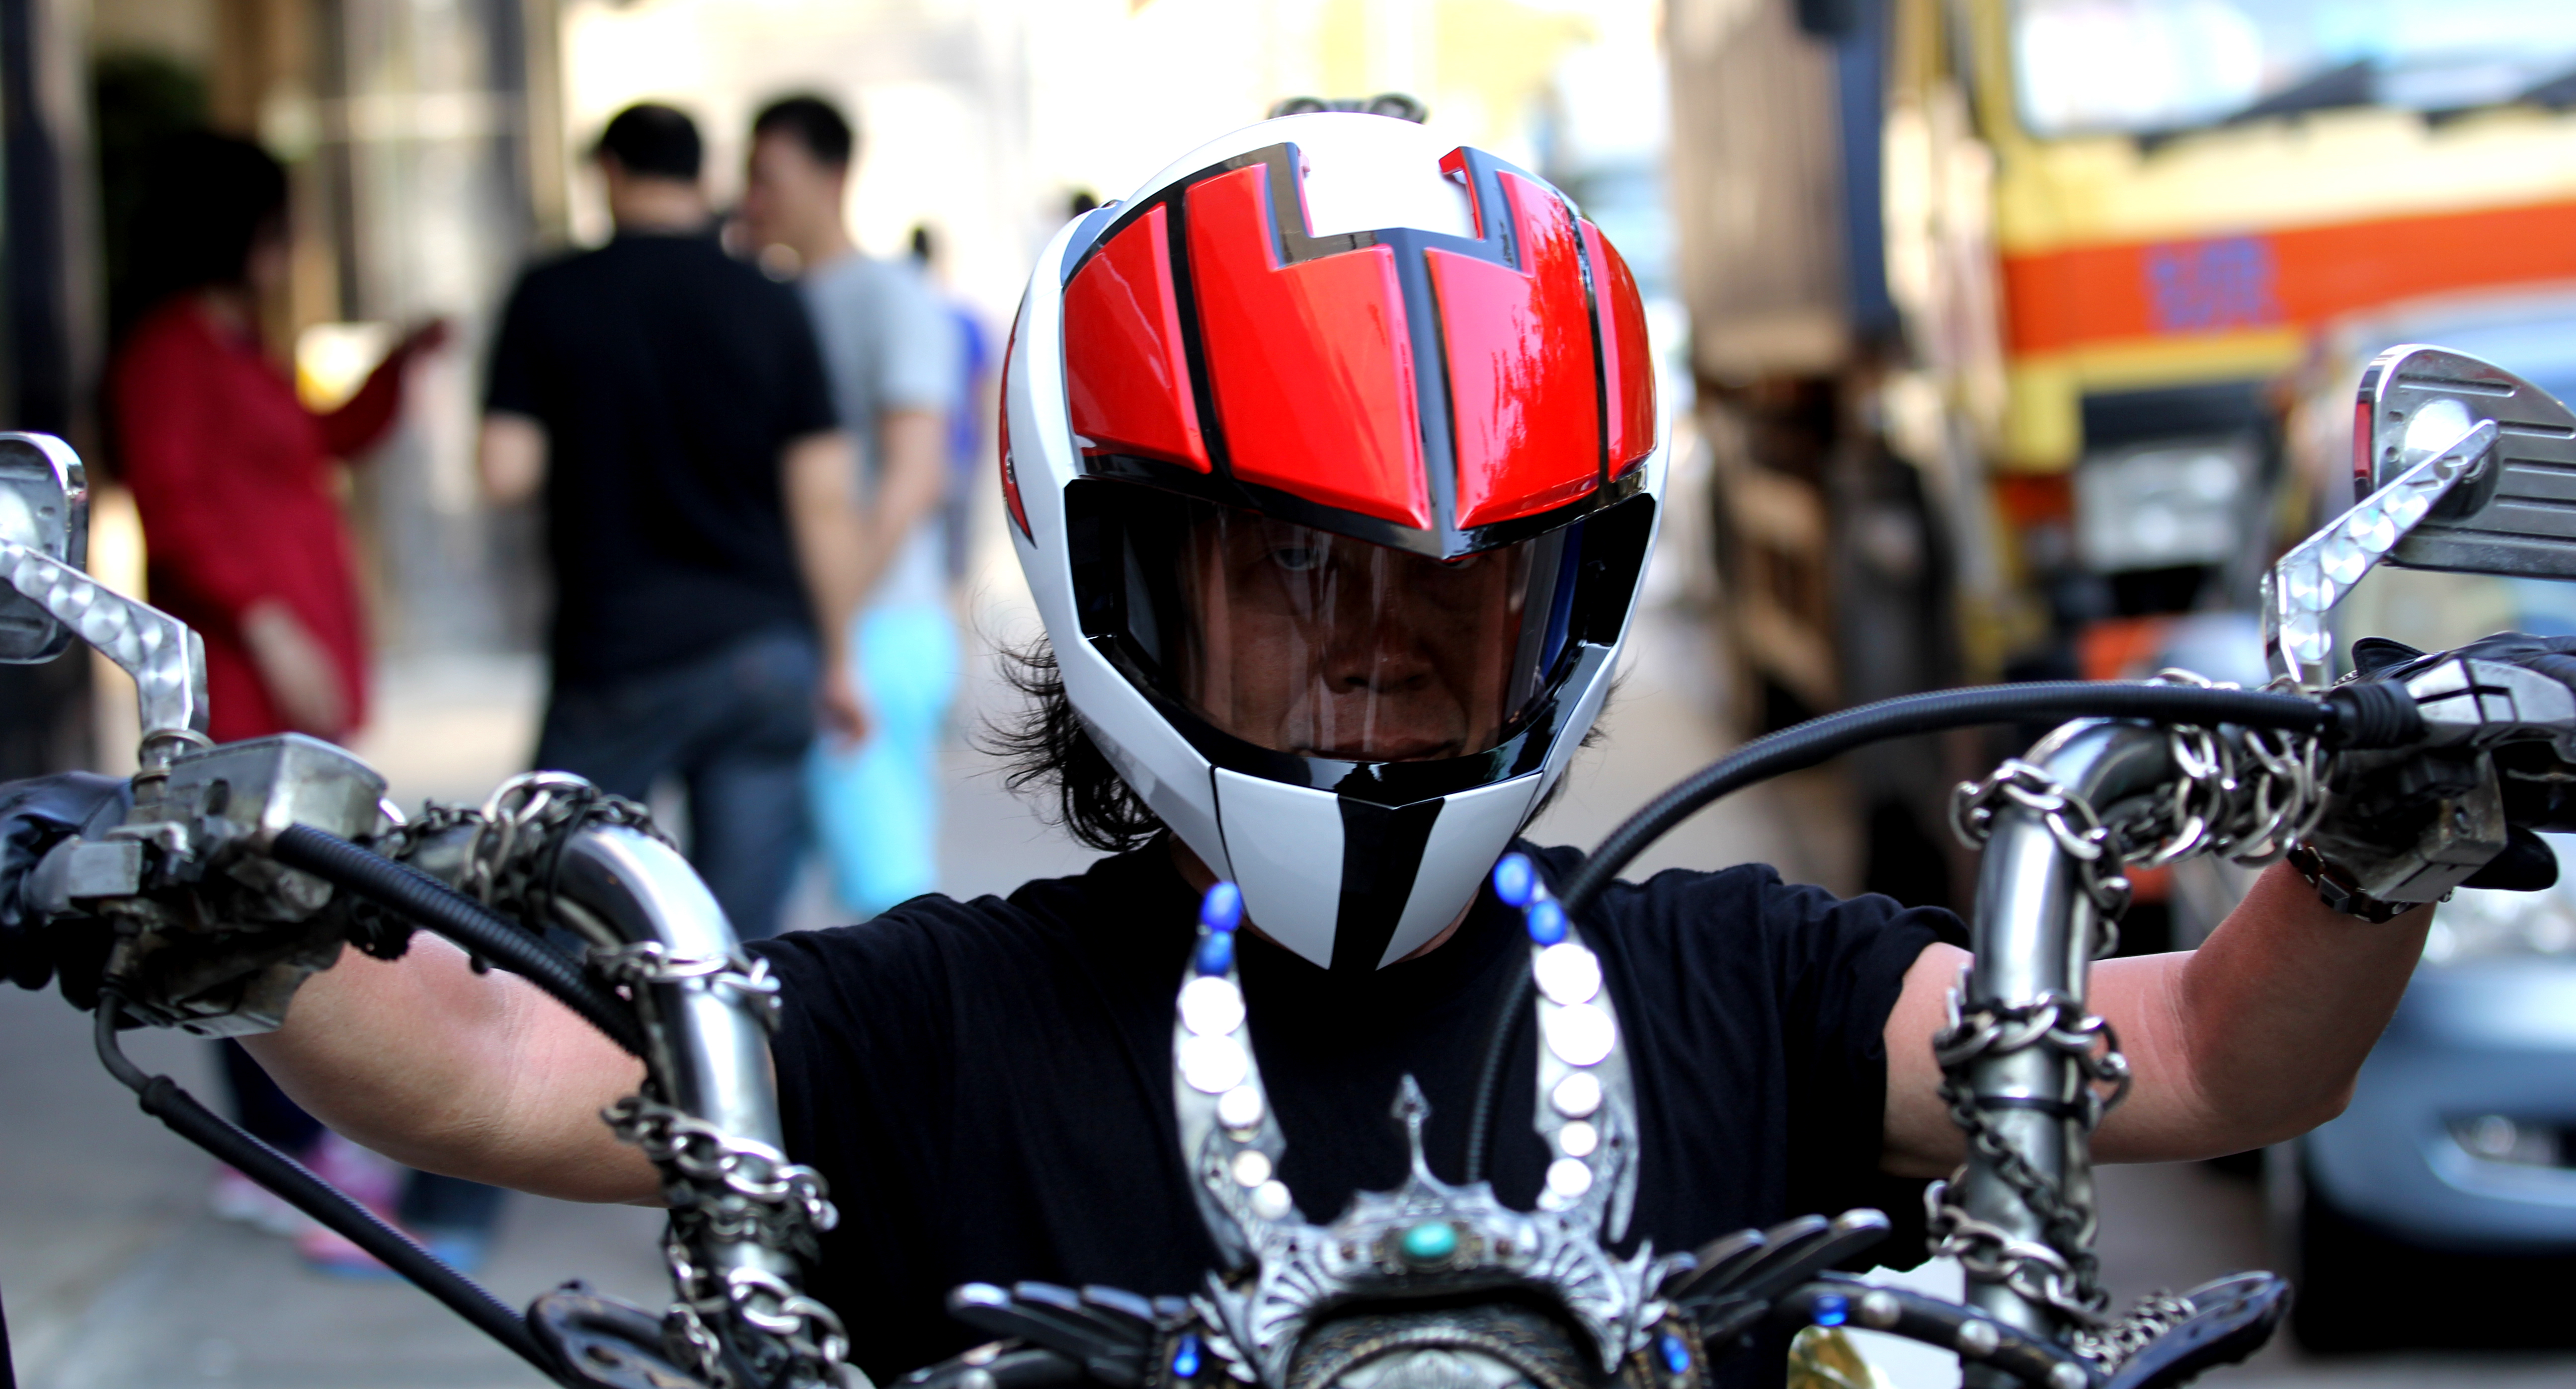 macross motorcycle helmet